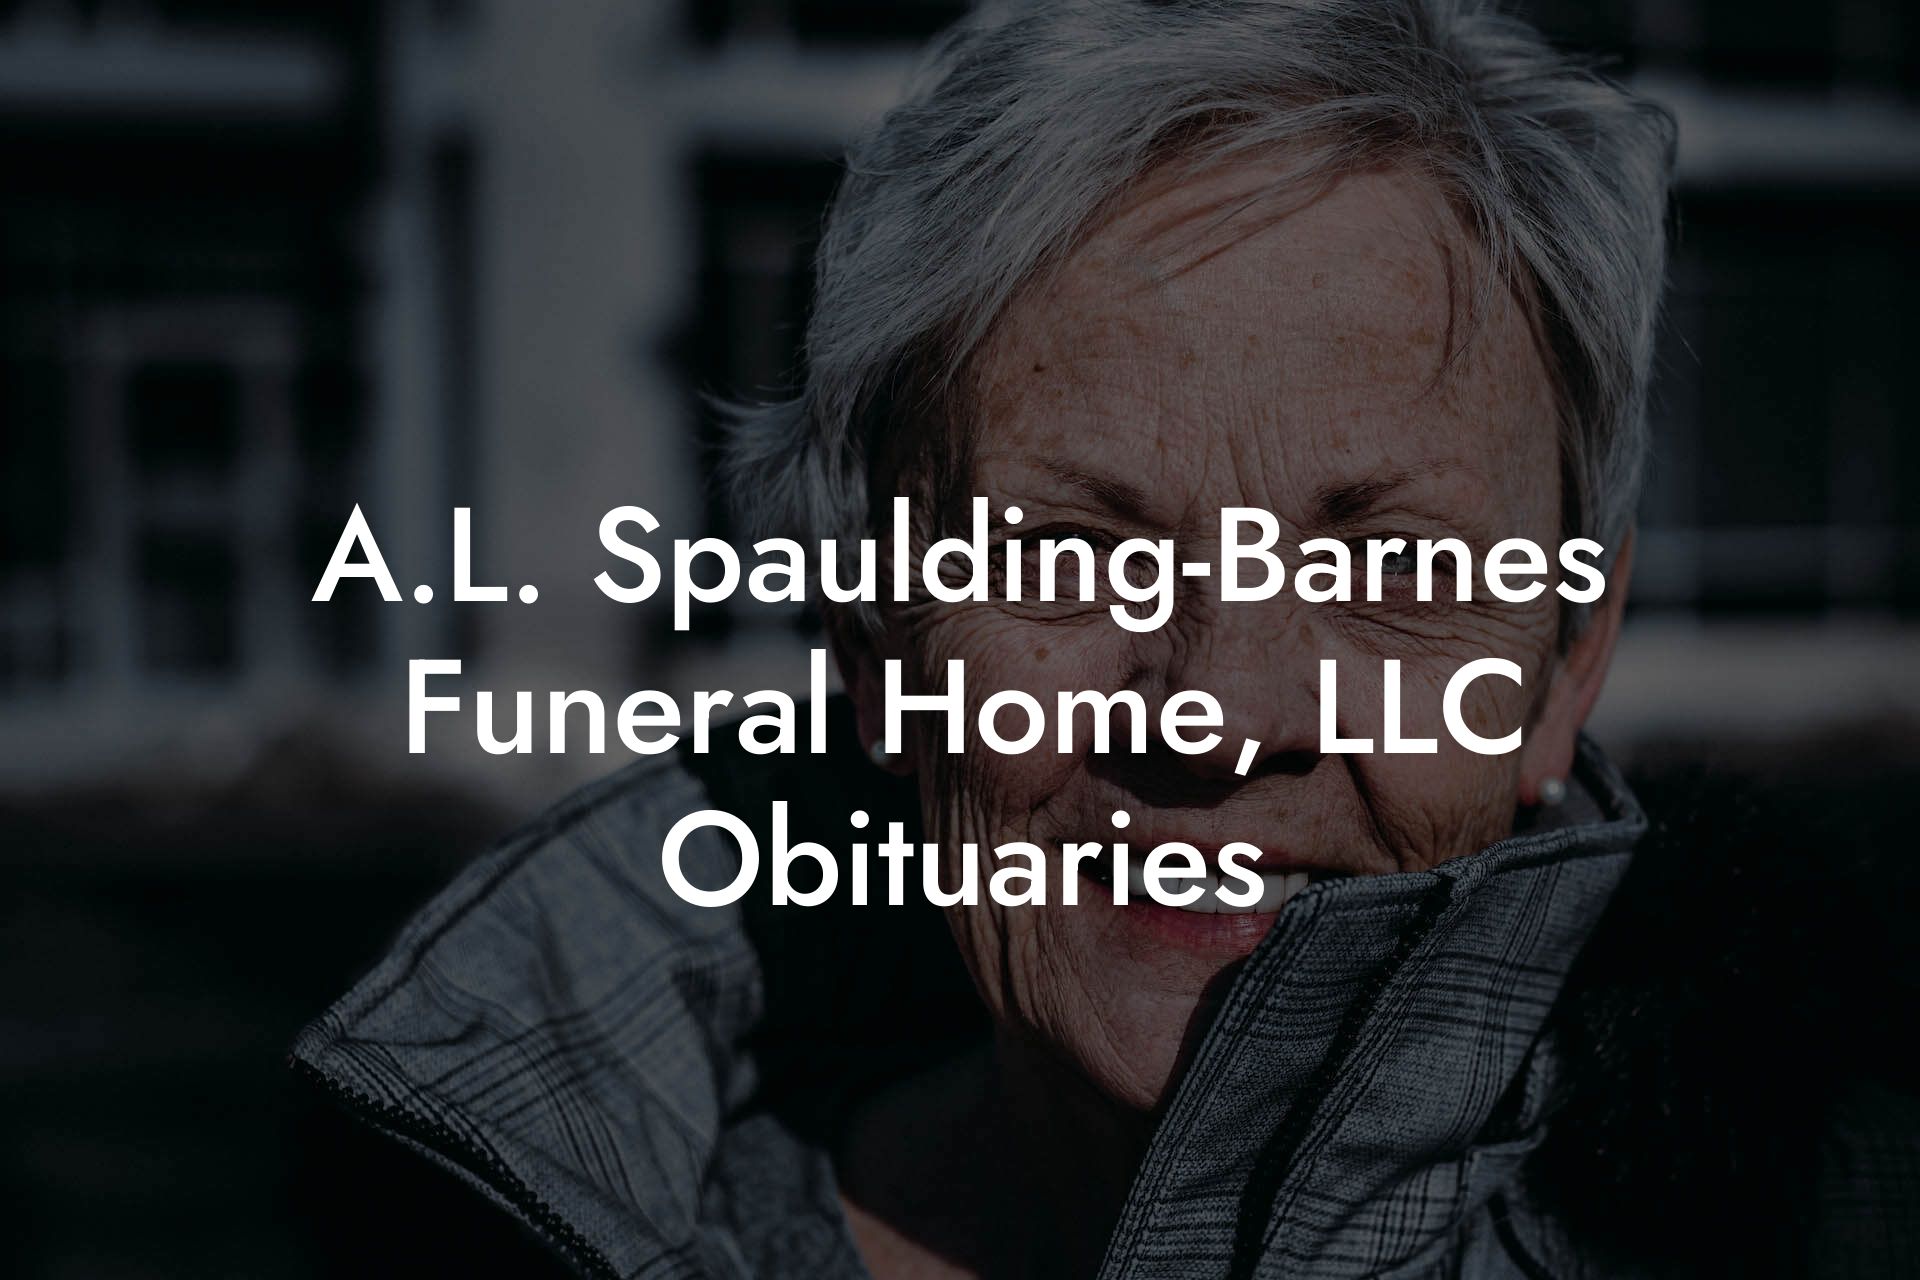 A.L. Spaulding-Barnes Funeral Home, LLC Obituaries